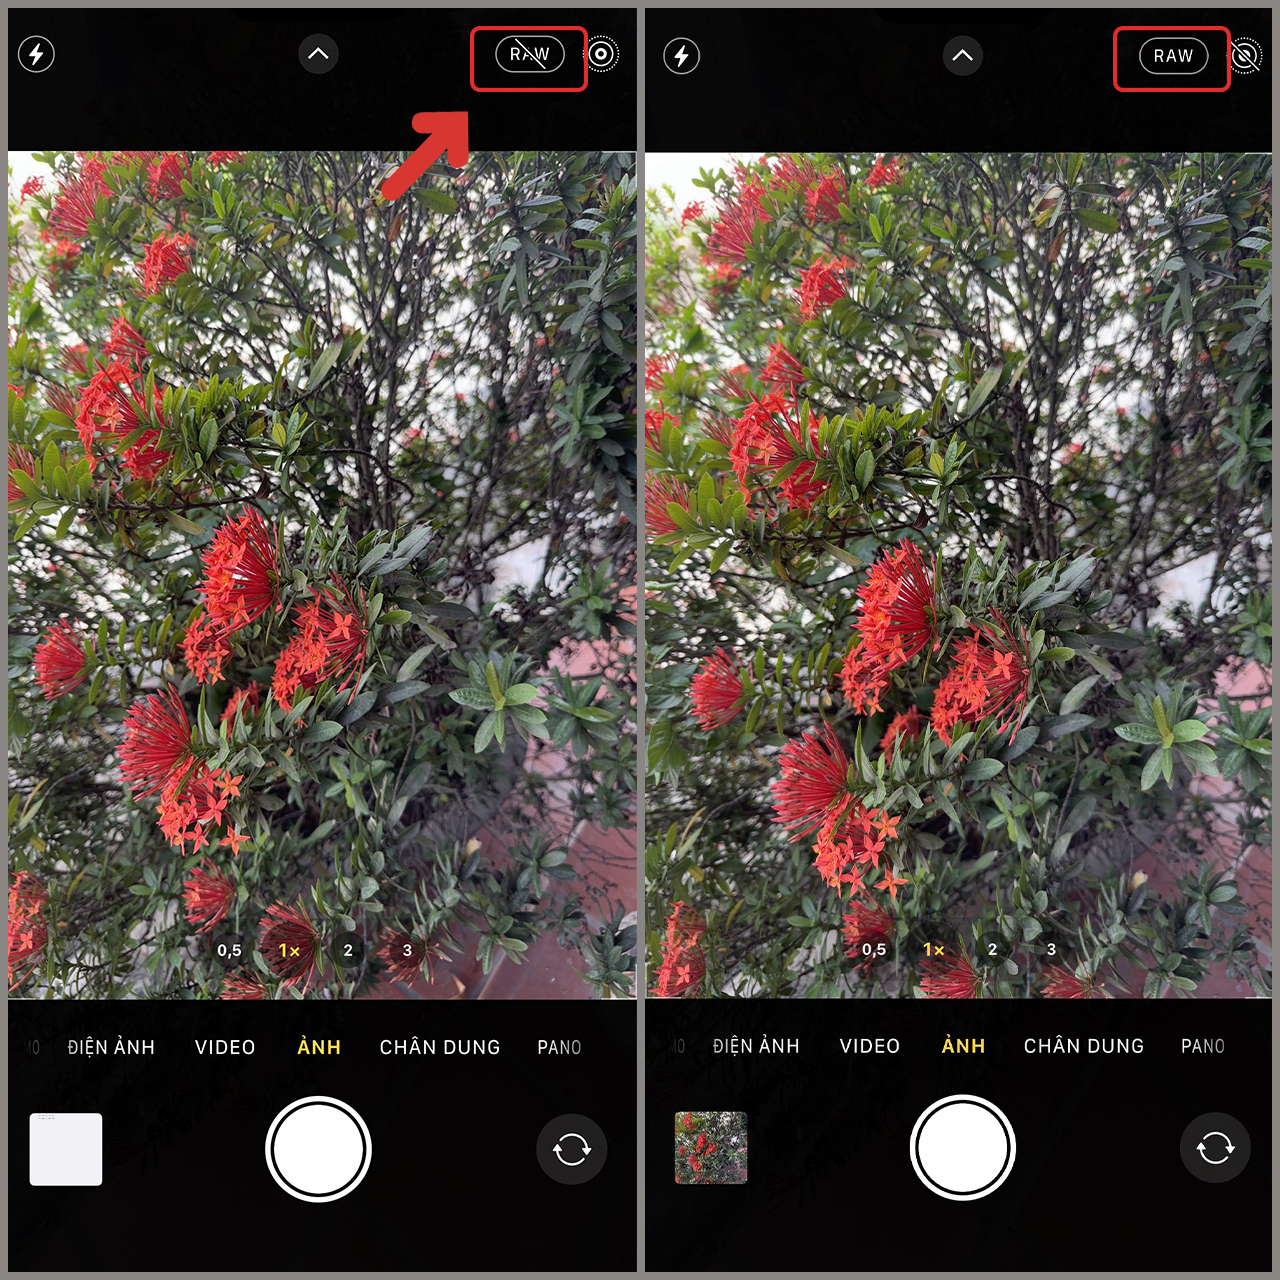 Điều đặc biệt của iPhone 14 Pro/Max là camera của nó, với độ phân giải 48 MP cho những bức ảnh rõ nét và sắc nét hơn bao giờ hết. Máy ảnh 48MP của iPhone 14 Pro/Max còn có khả năng bắt sáng tốt hơn, cho phép bạn chụp ảnh trong điều kiện ánh sáng yếu một cách dễ dàng.